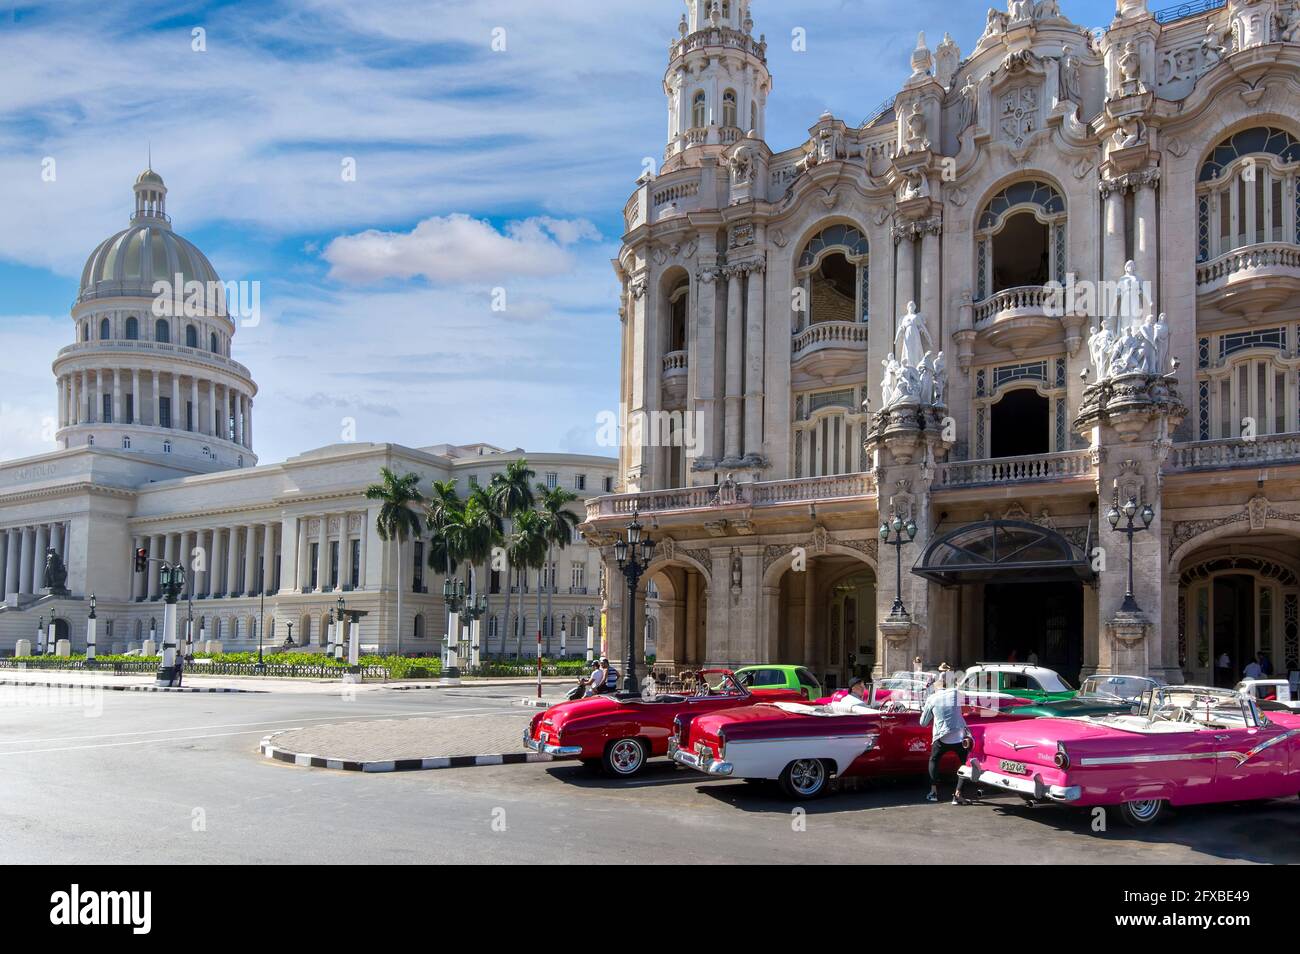 Havanna, Kuba 16. Januar 2020: Fröhliche Touristen, die während ihrer Urlaubszeit eine Taxifahrt in berühmten, farbenfrohen kubanischen Vintage-Taxis entlang des Paseo del Prado, El Capitolio und des historischen Stadtzentrums von Havanna genießen Stockfoto